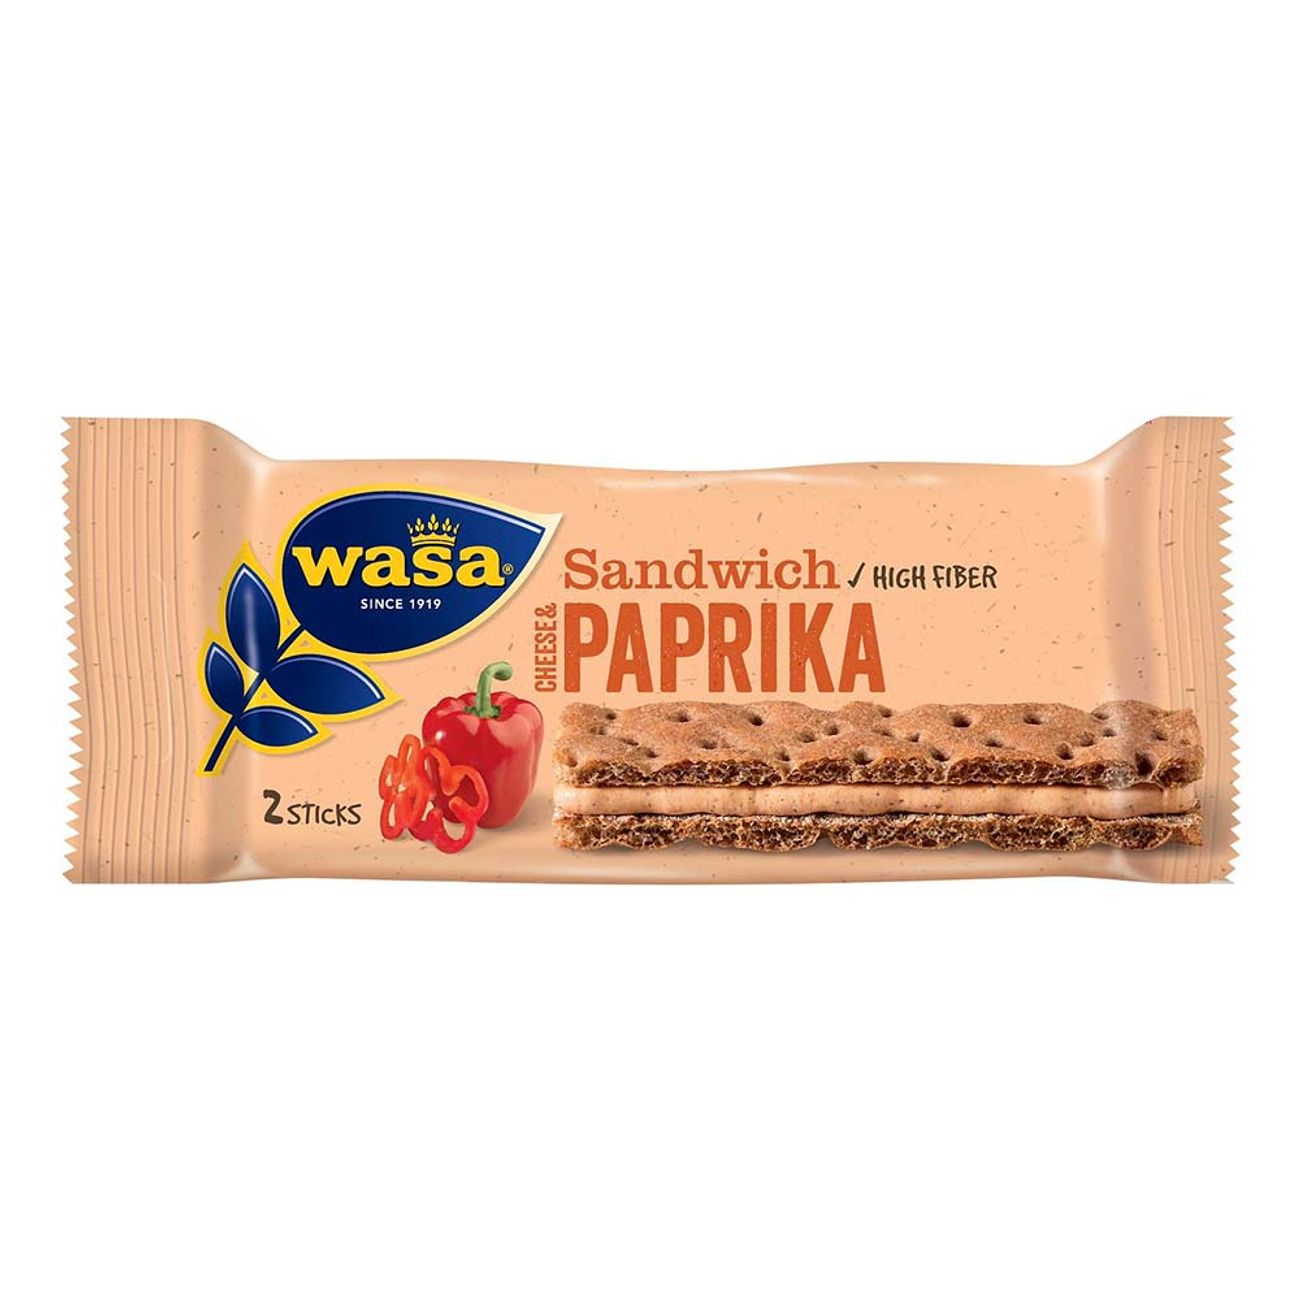 wasa-sandwich-paprika-92712-1